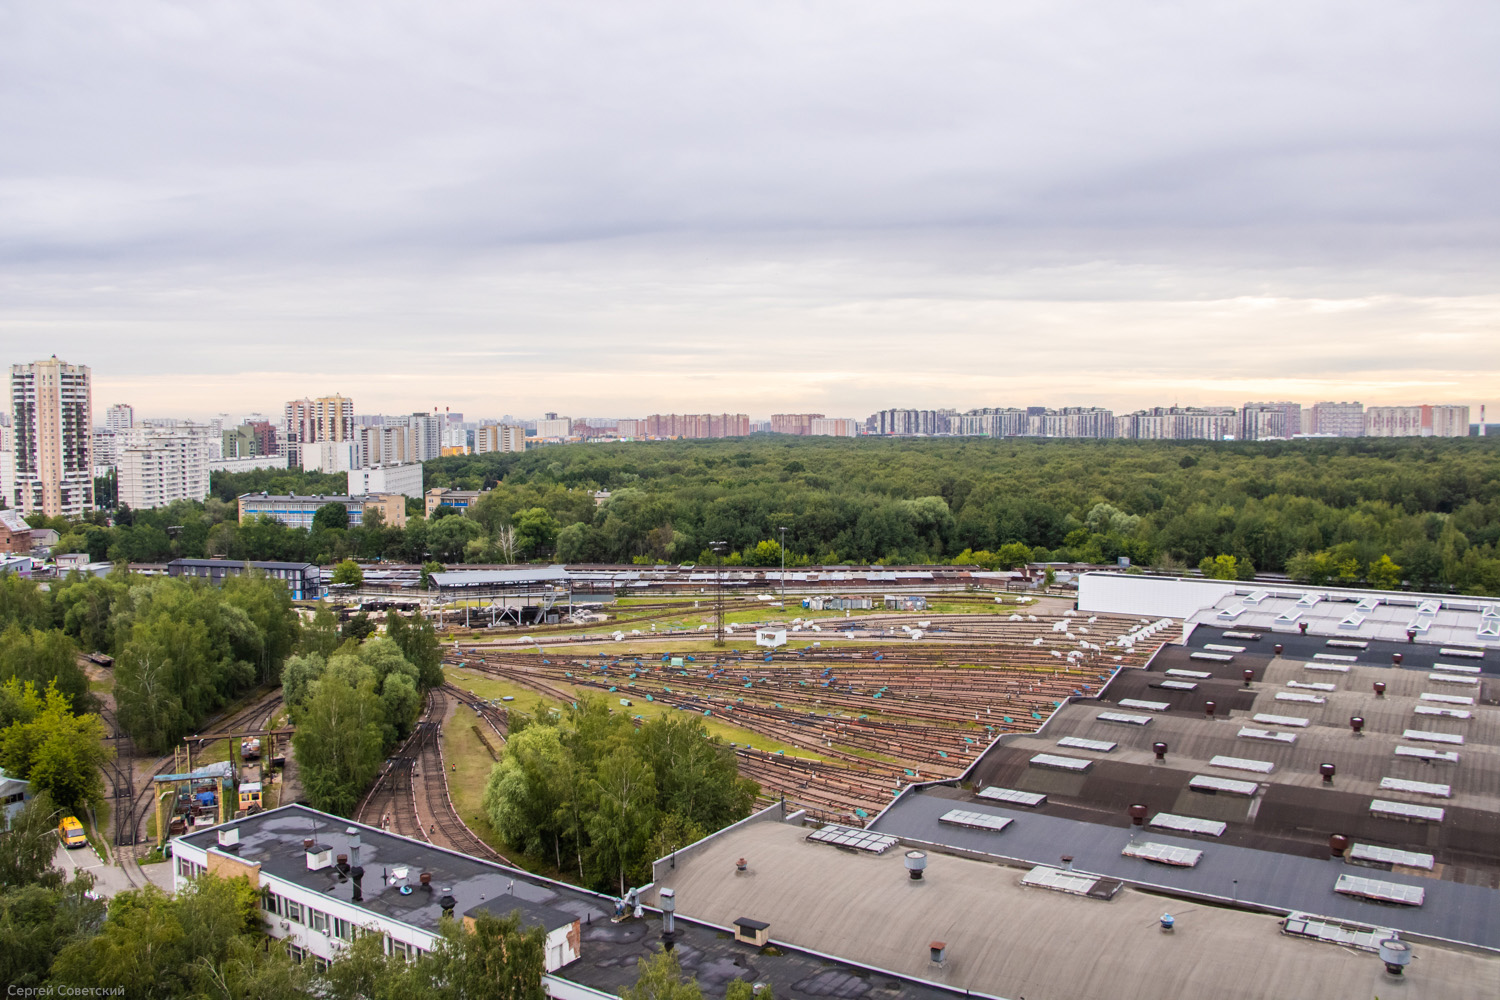 Moskau — Metro — [7] Tagansko-Krasnopresnenskaya Line; Moskau — Views from a height